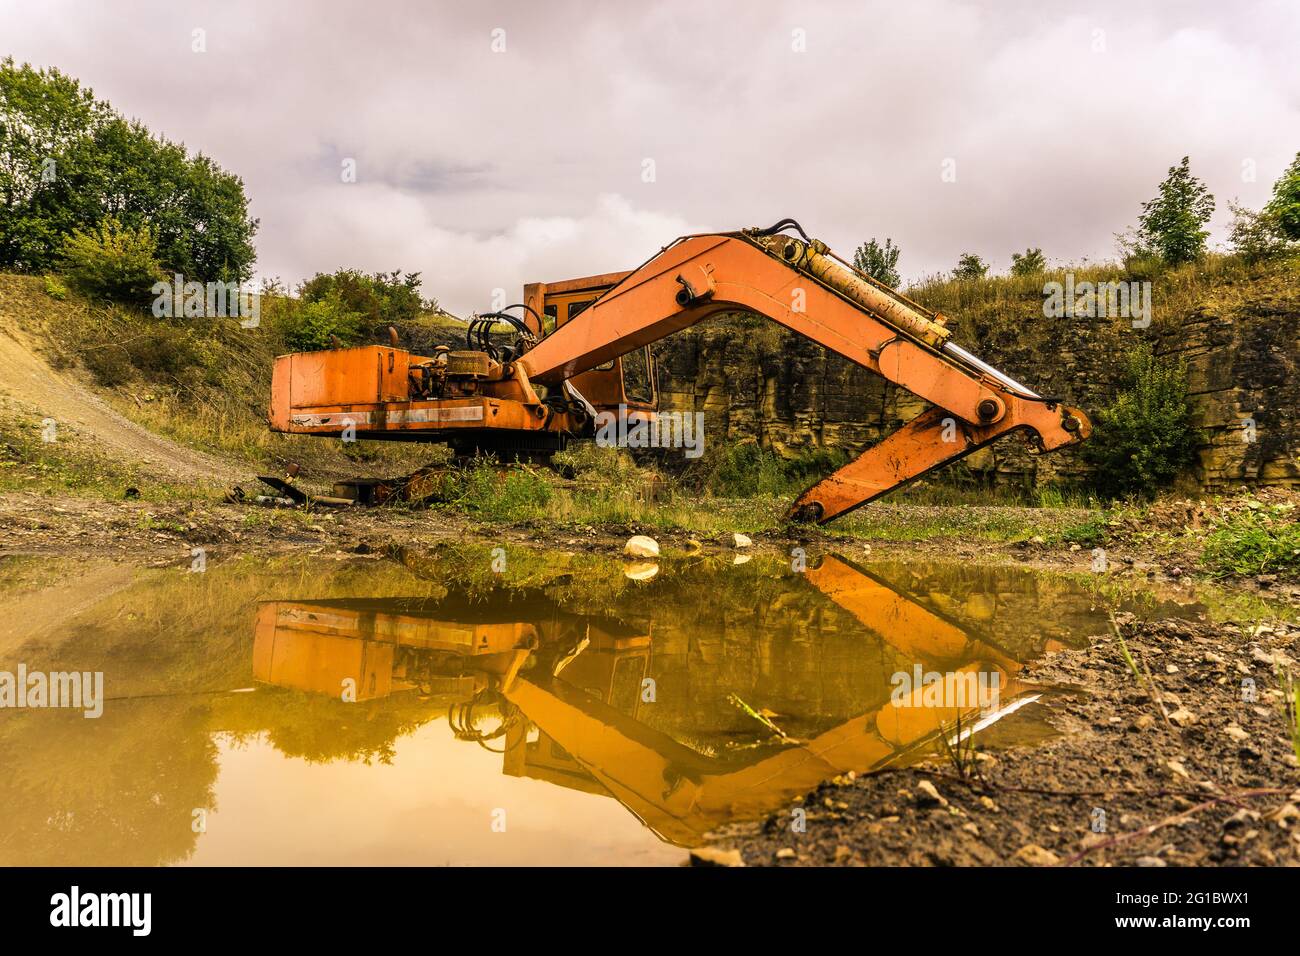 excavadora naranja abandonada que se refleja en el agua fangosa de charco Foto de stock